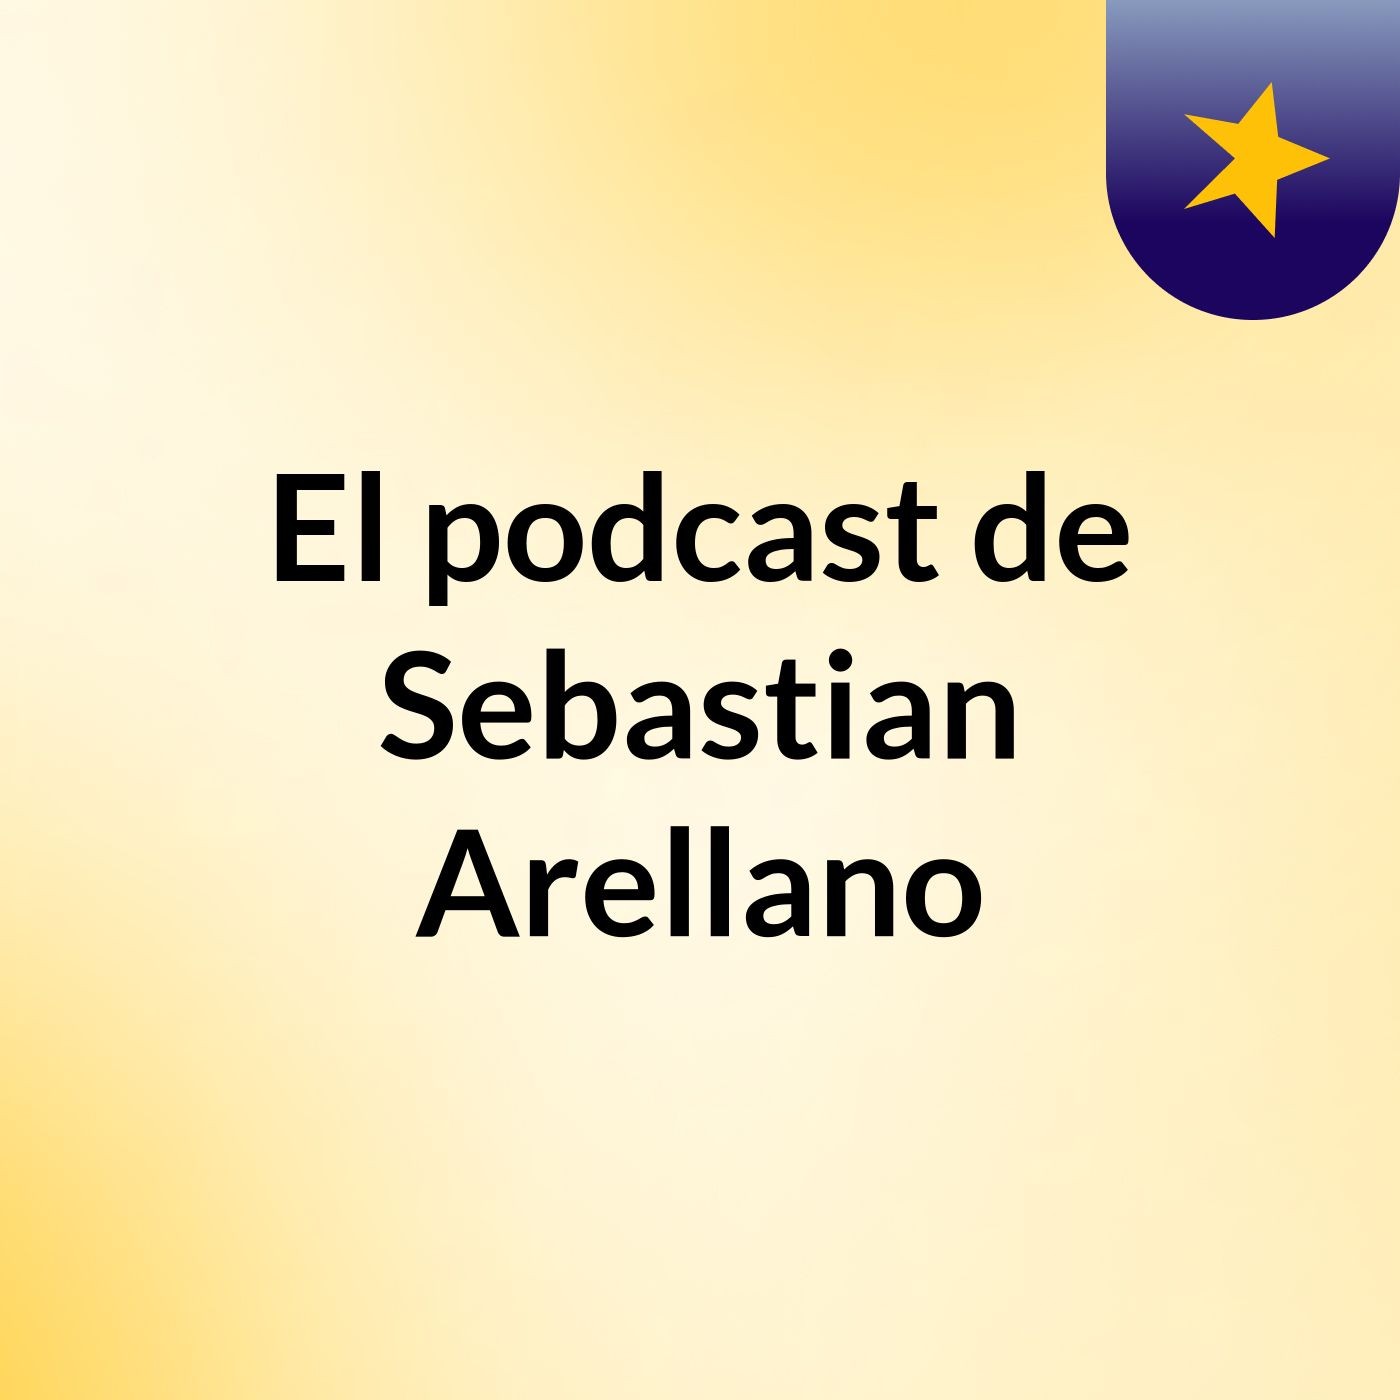 El podcast de Sebastian Arellano